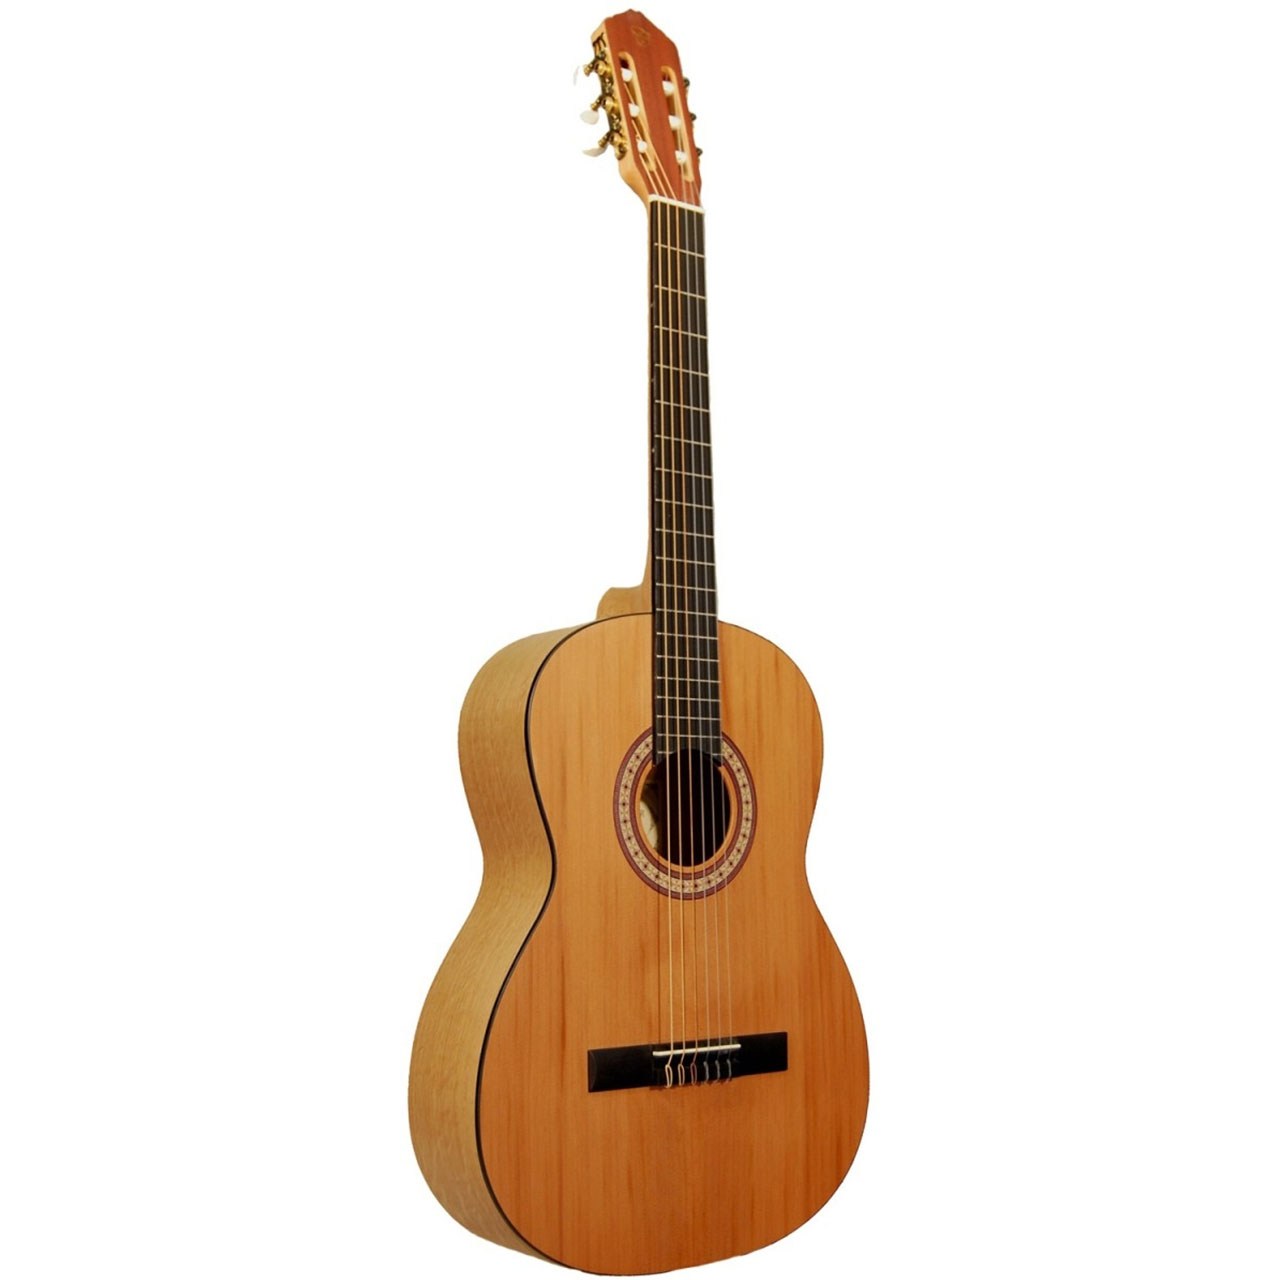 گیتار کلاسیک اشترونال مدل Eko 371 7/8